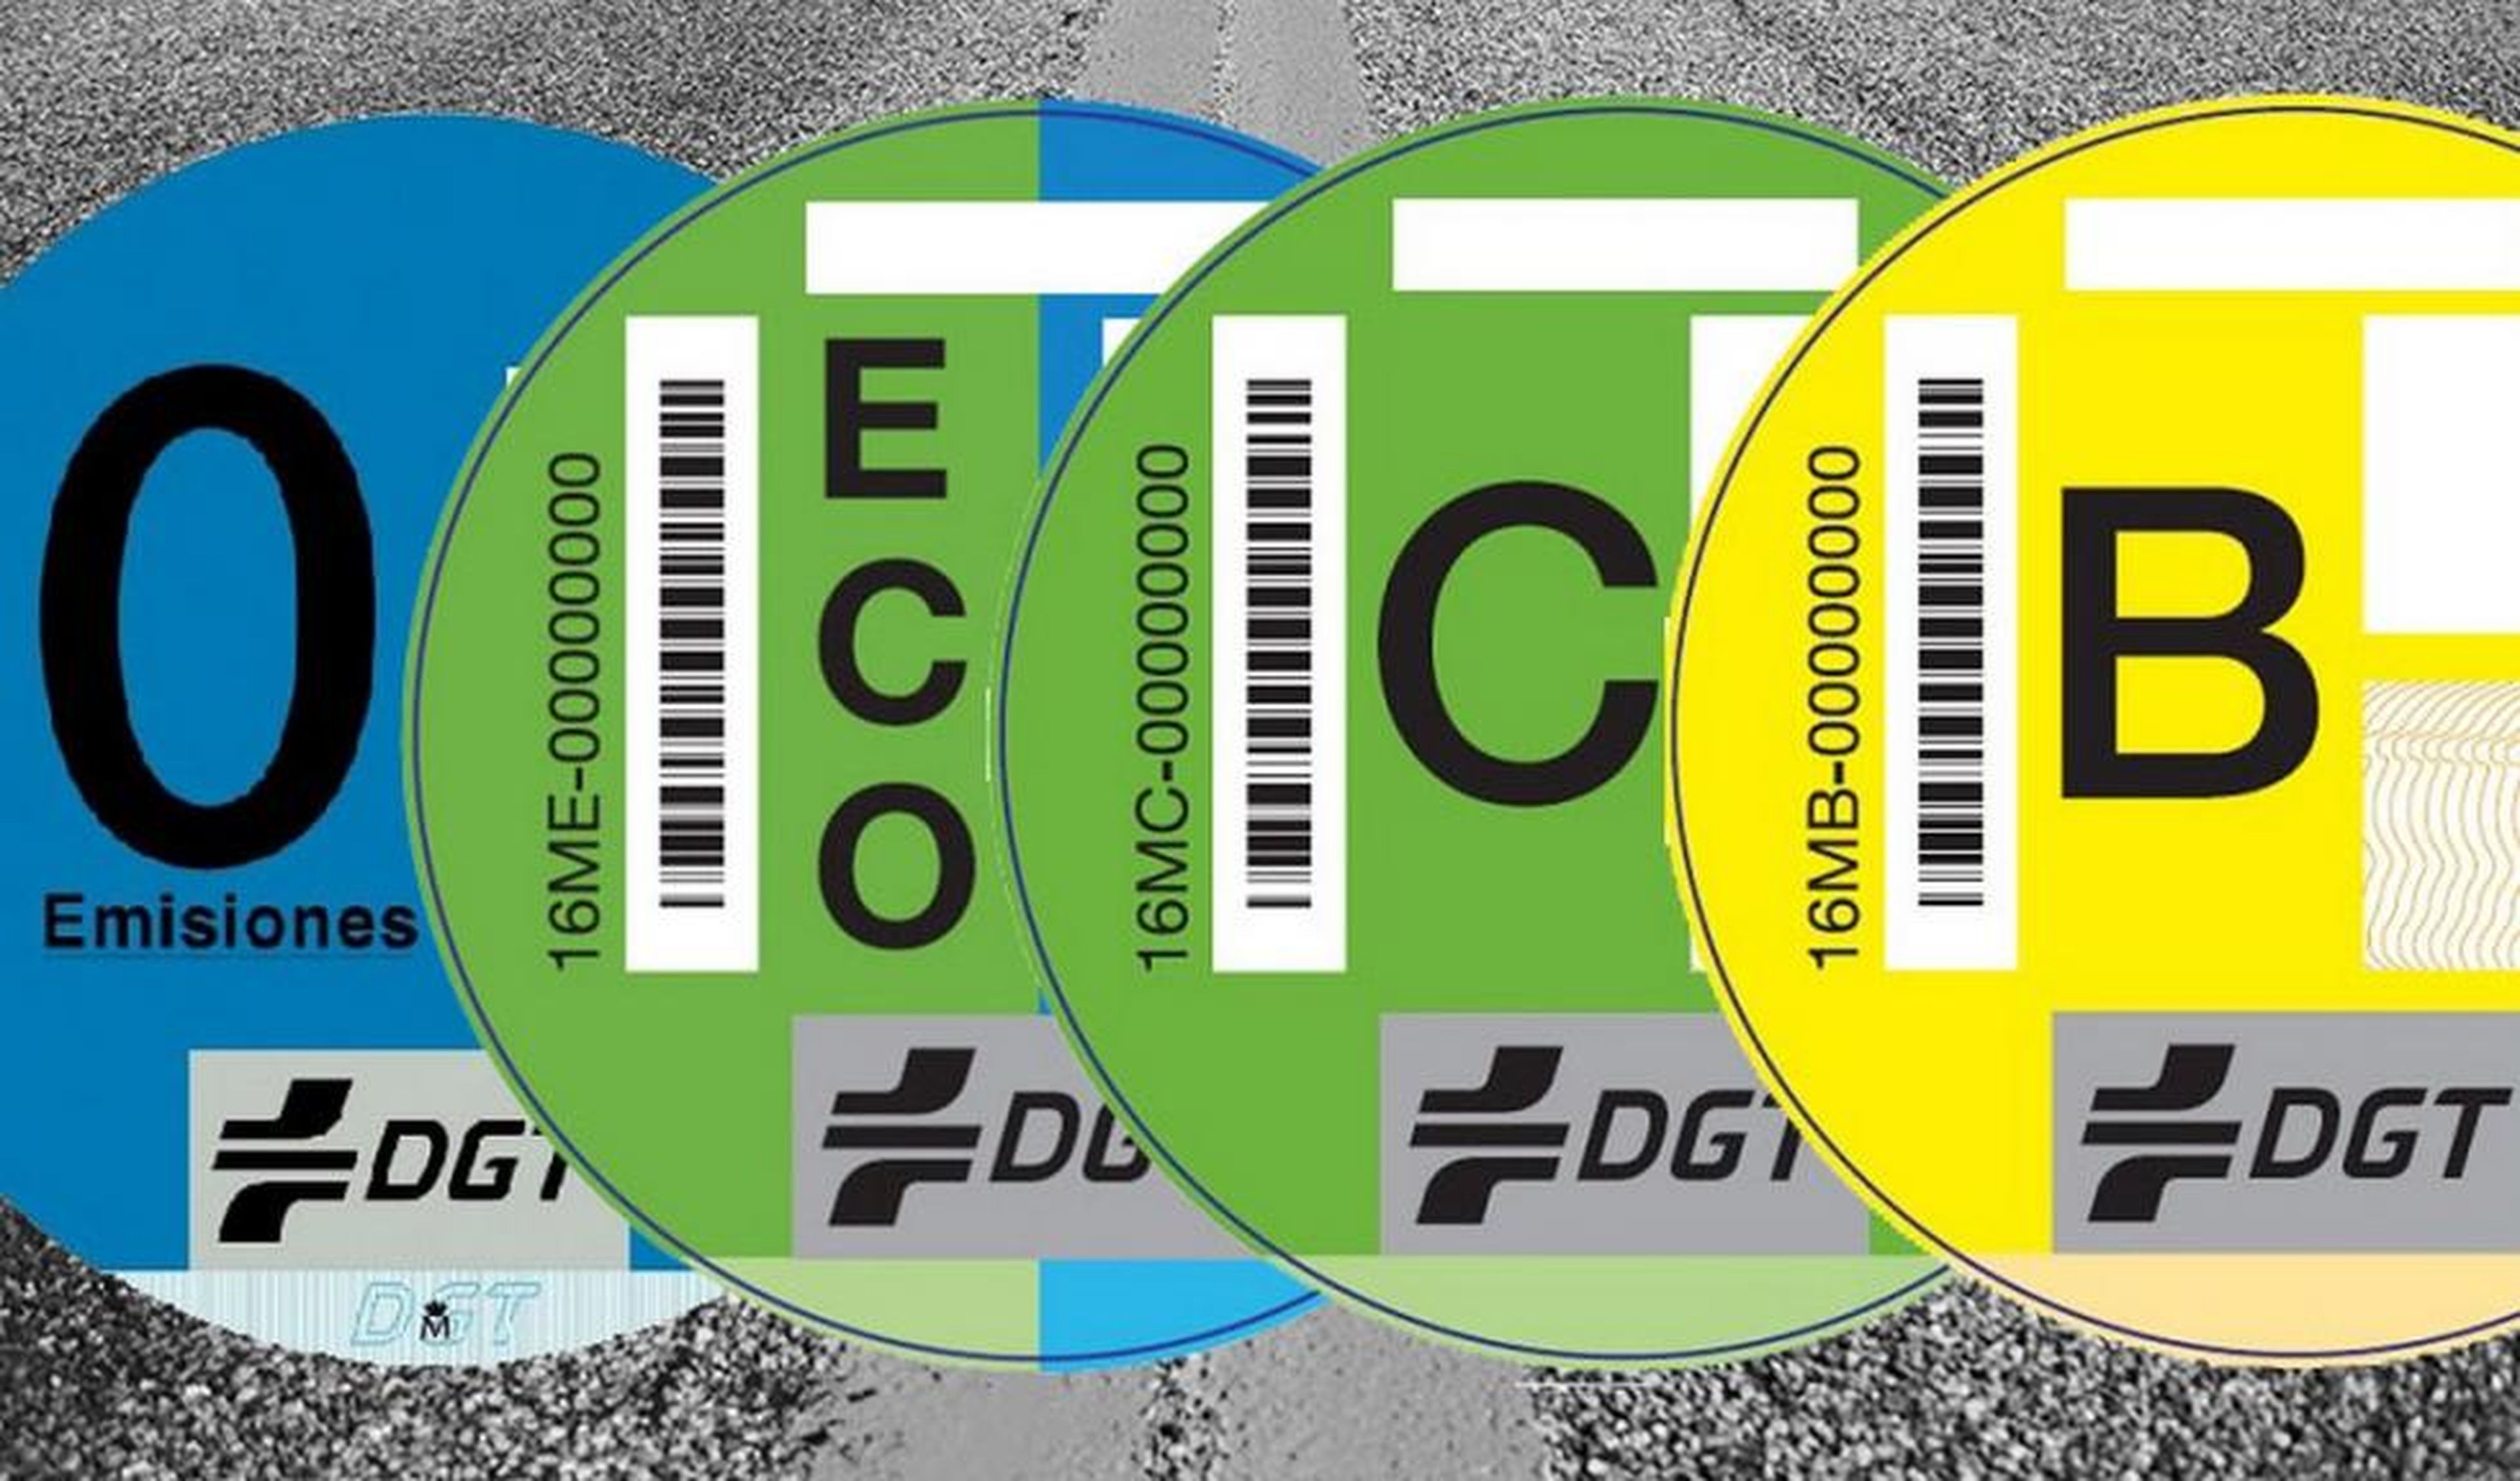 Diferencias entre la etiqueta C y la etiqueta Eco de la DGT